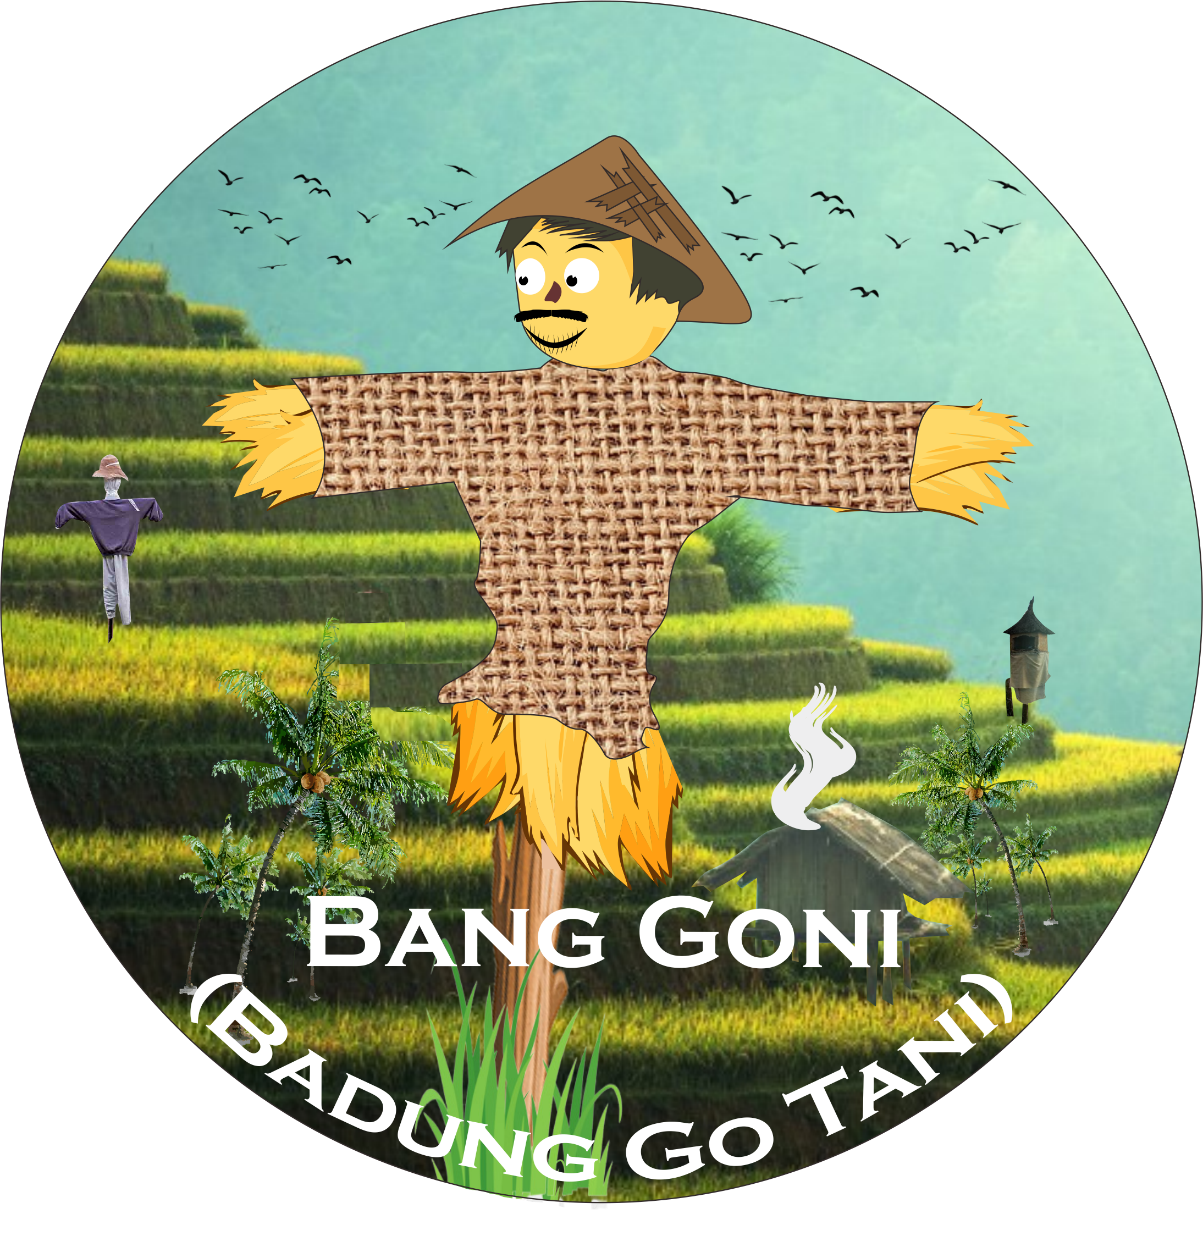 Badung Go Tani